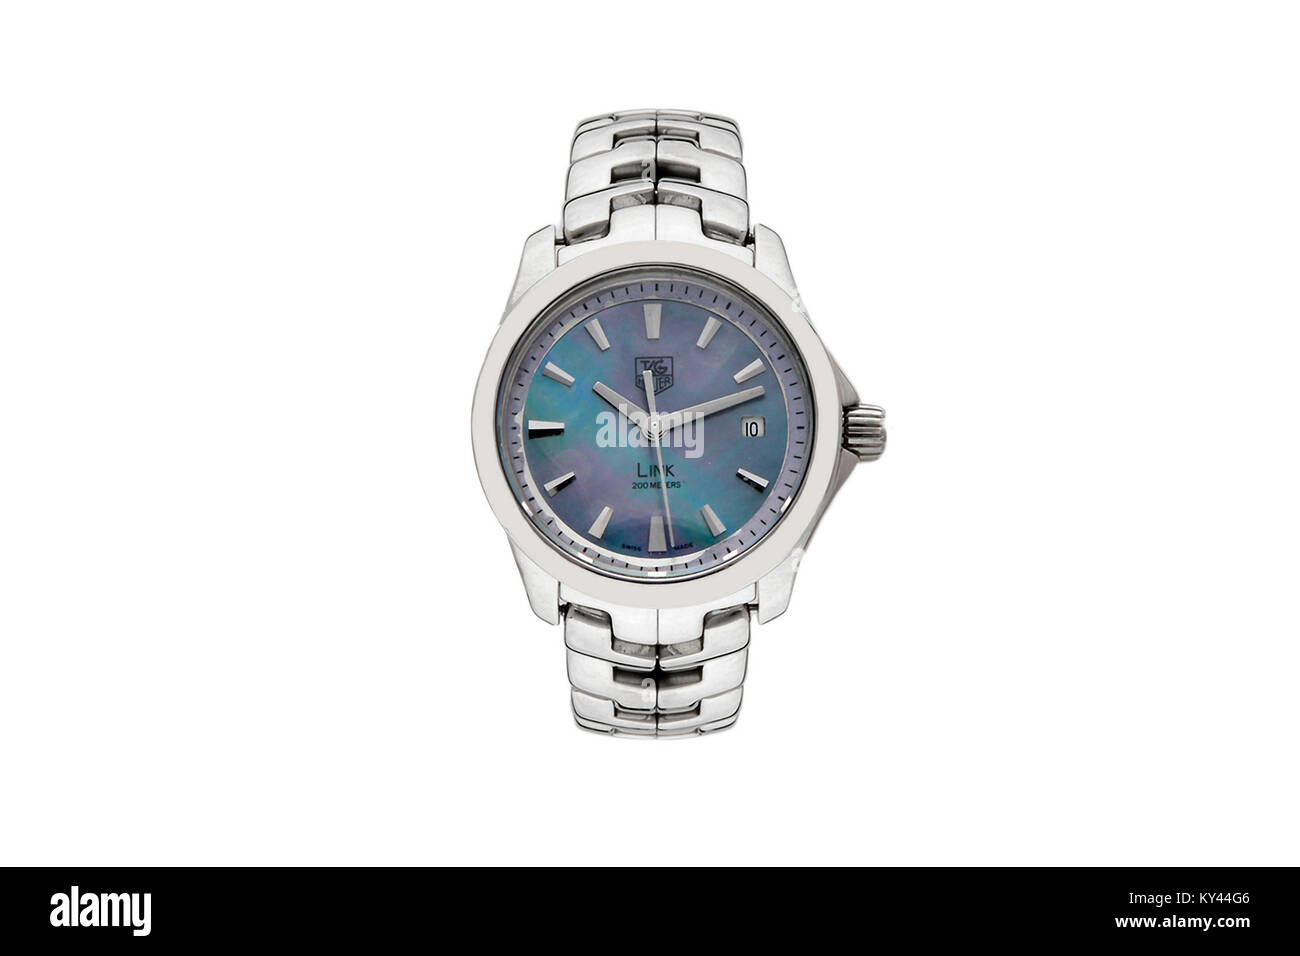 Tag Heuer Enlace reloj de hombre de acero inoxidable con superficie azul Foto de stock